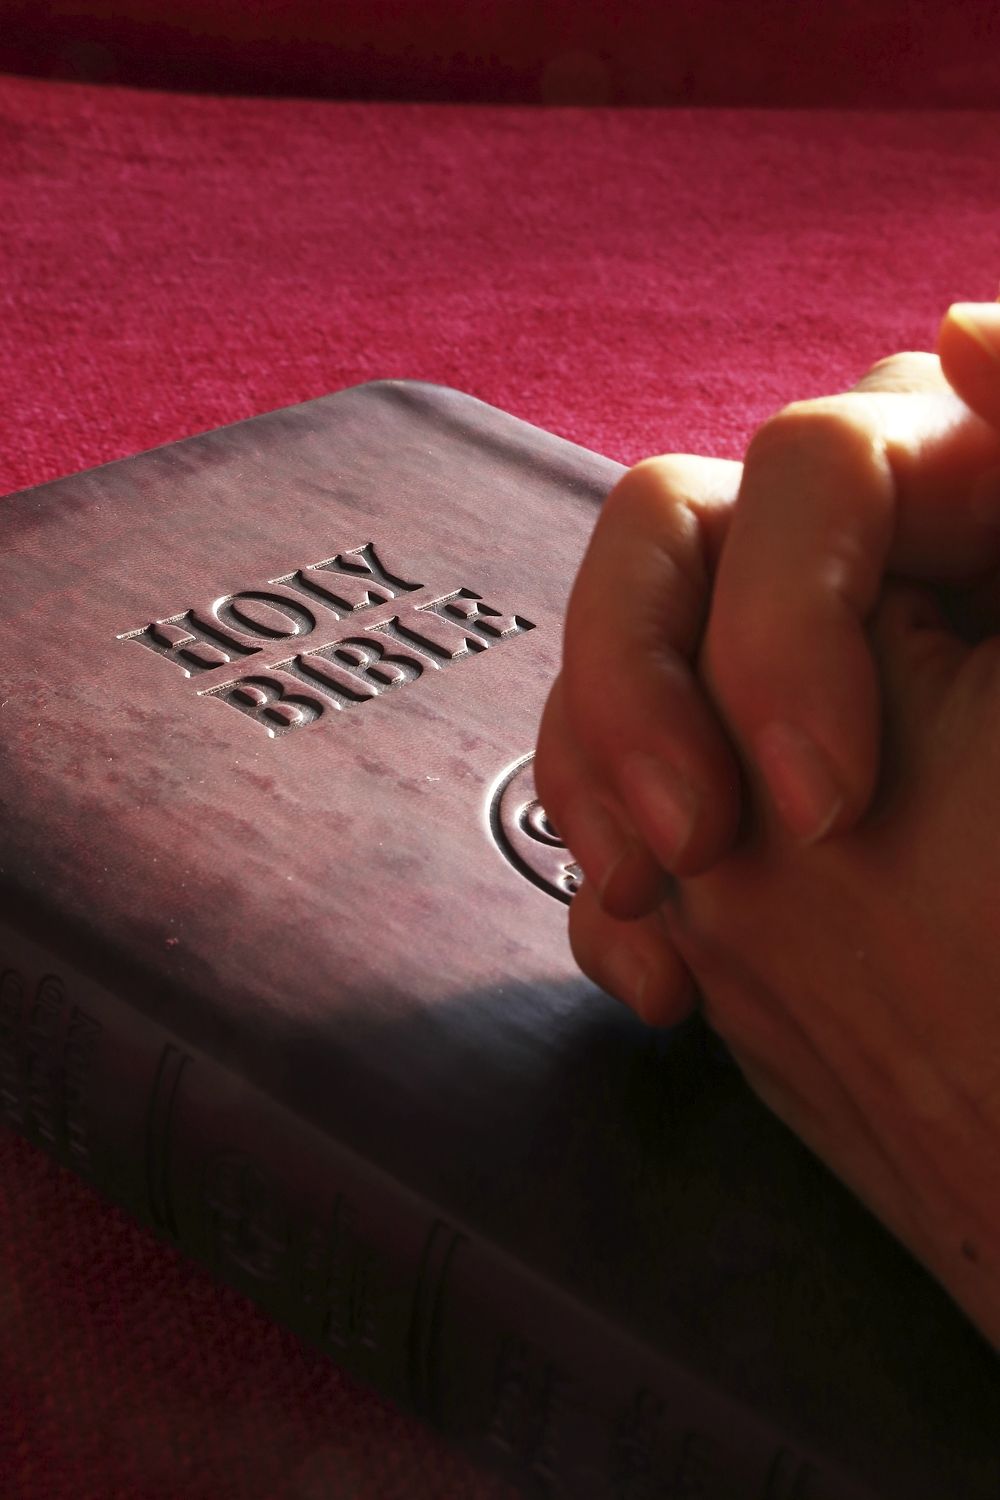 Free hands praying on bible